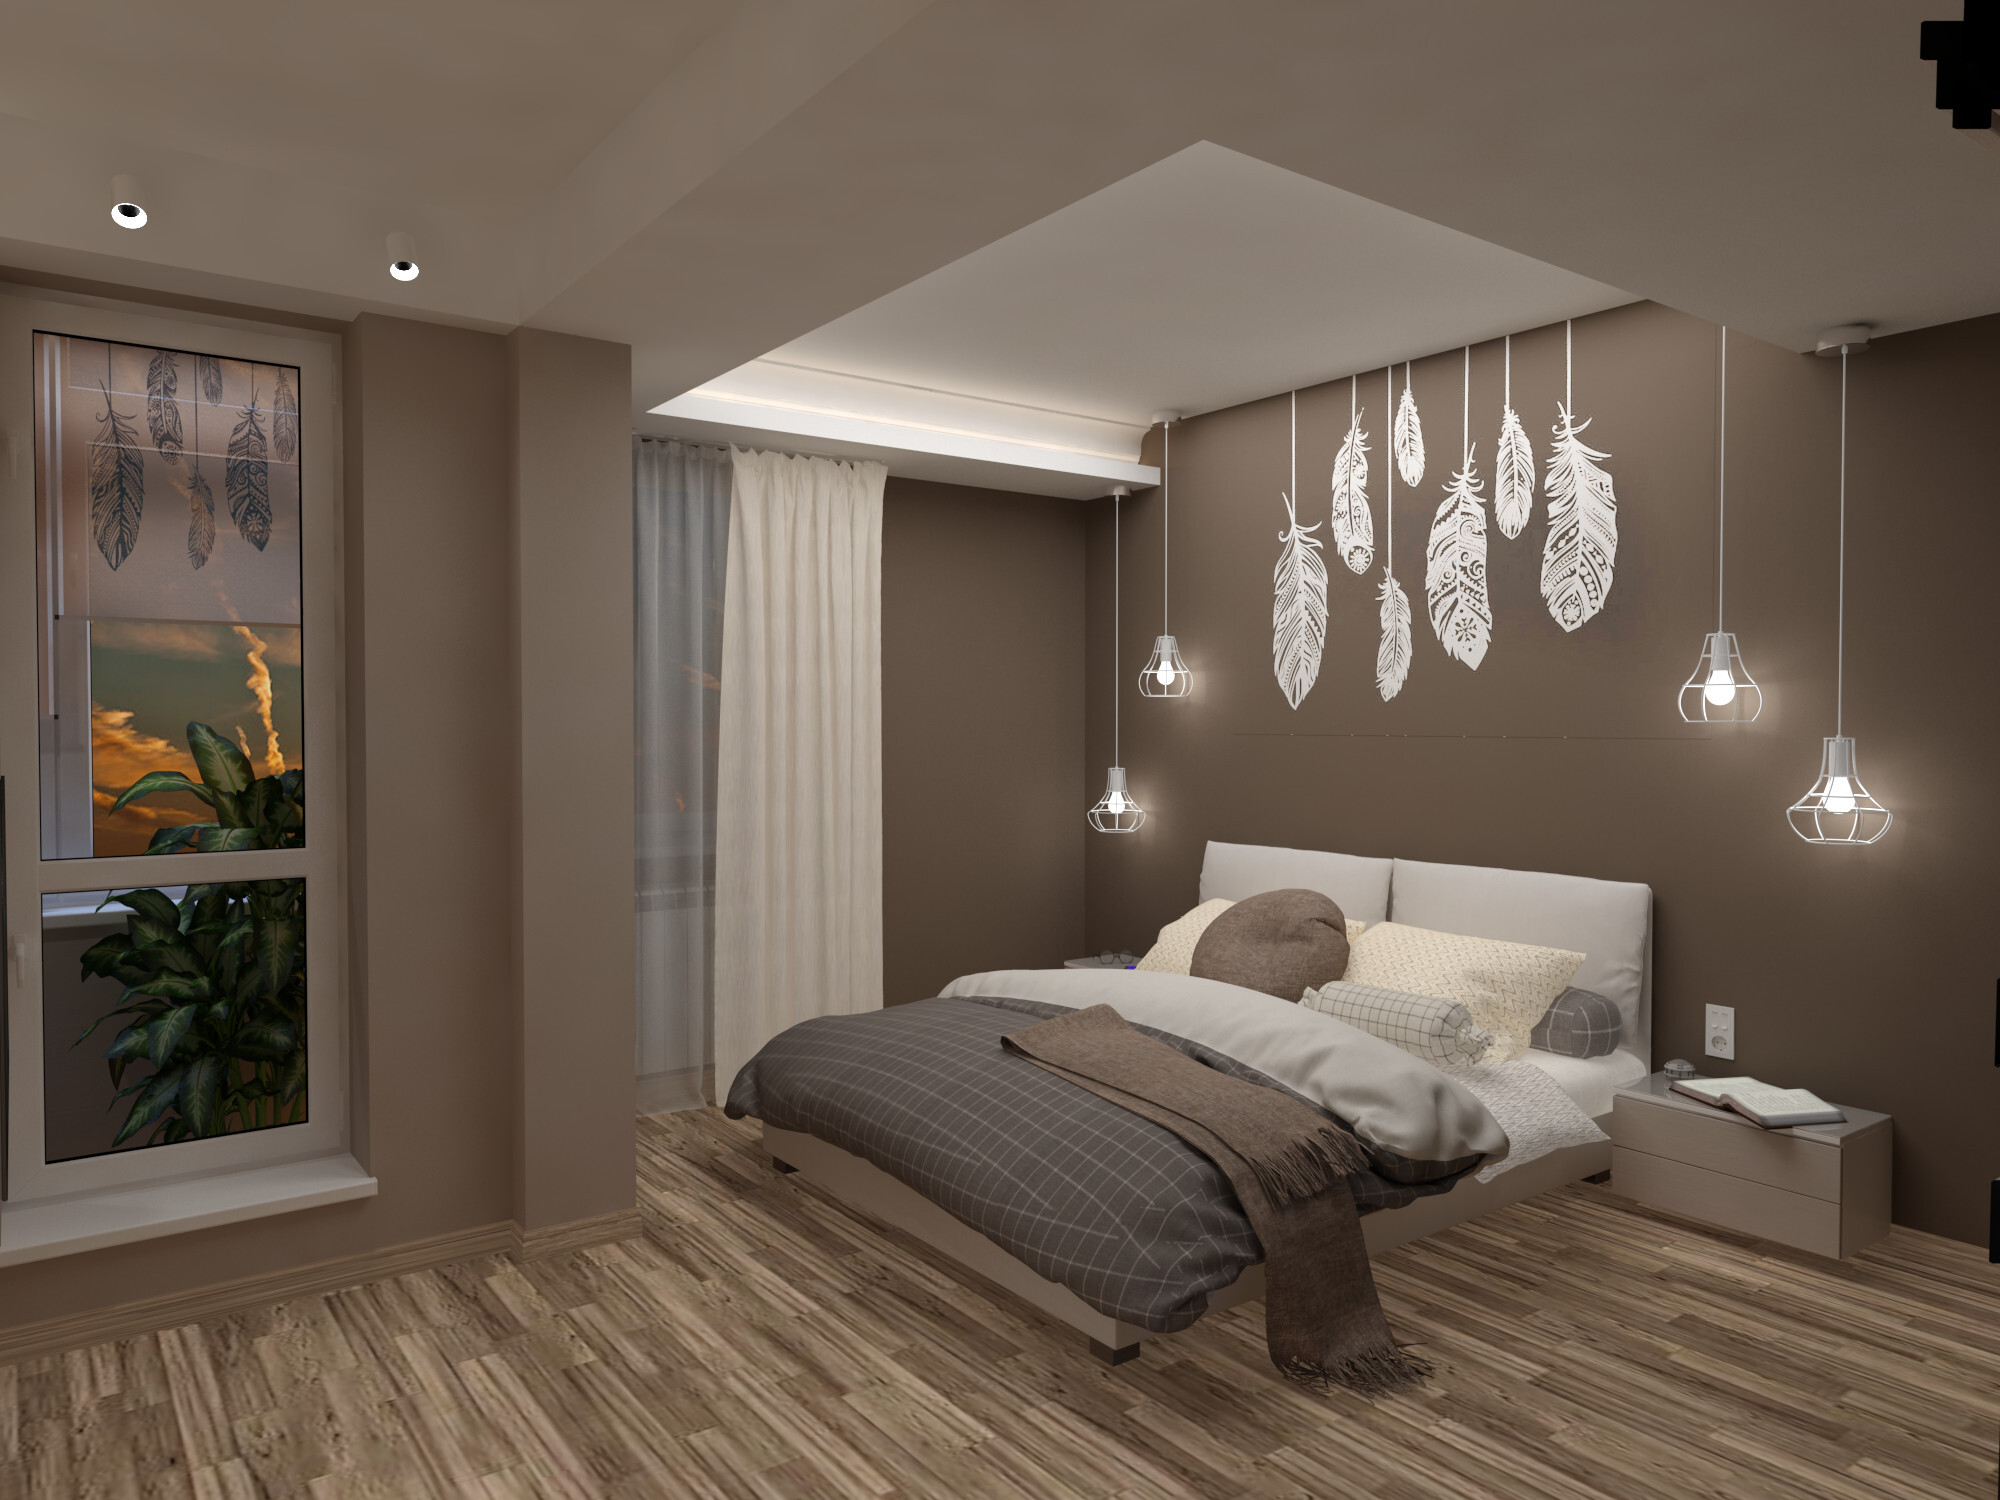 Интерьер спальни cветовыми линиями, рейками с подсветкой, подсветкой настенной, подсветкой светодиодной и светильниками над кроватью